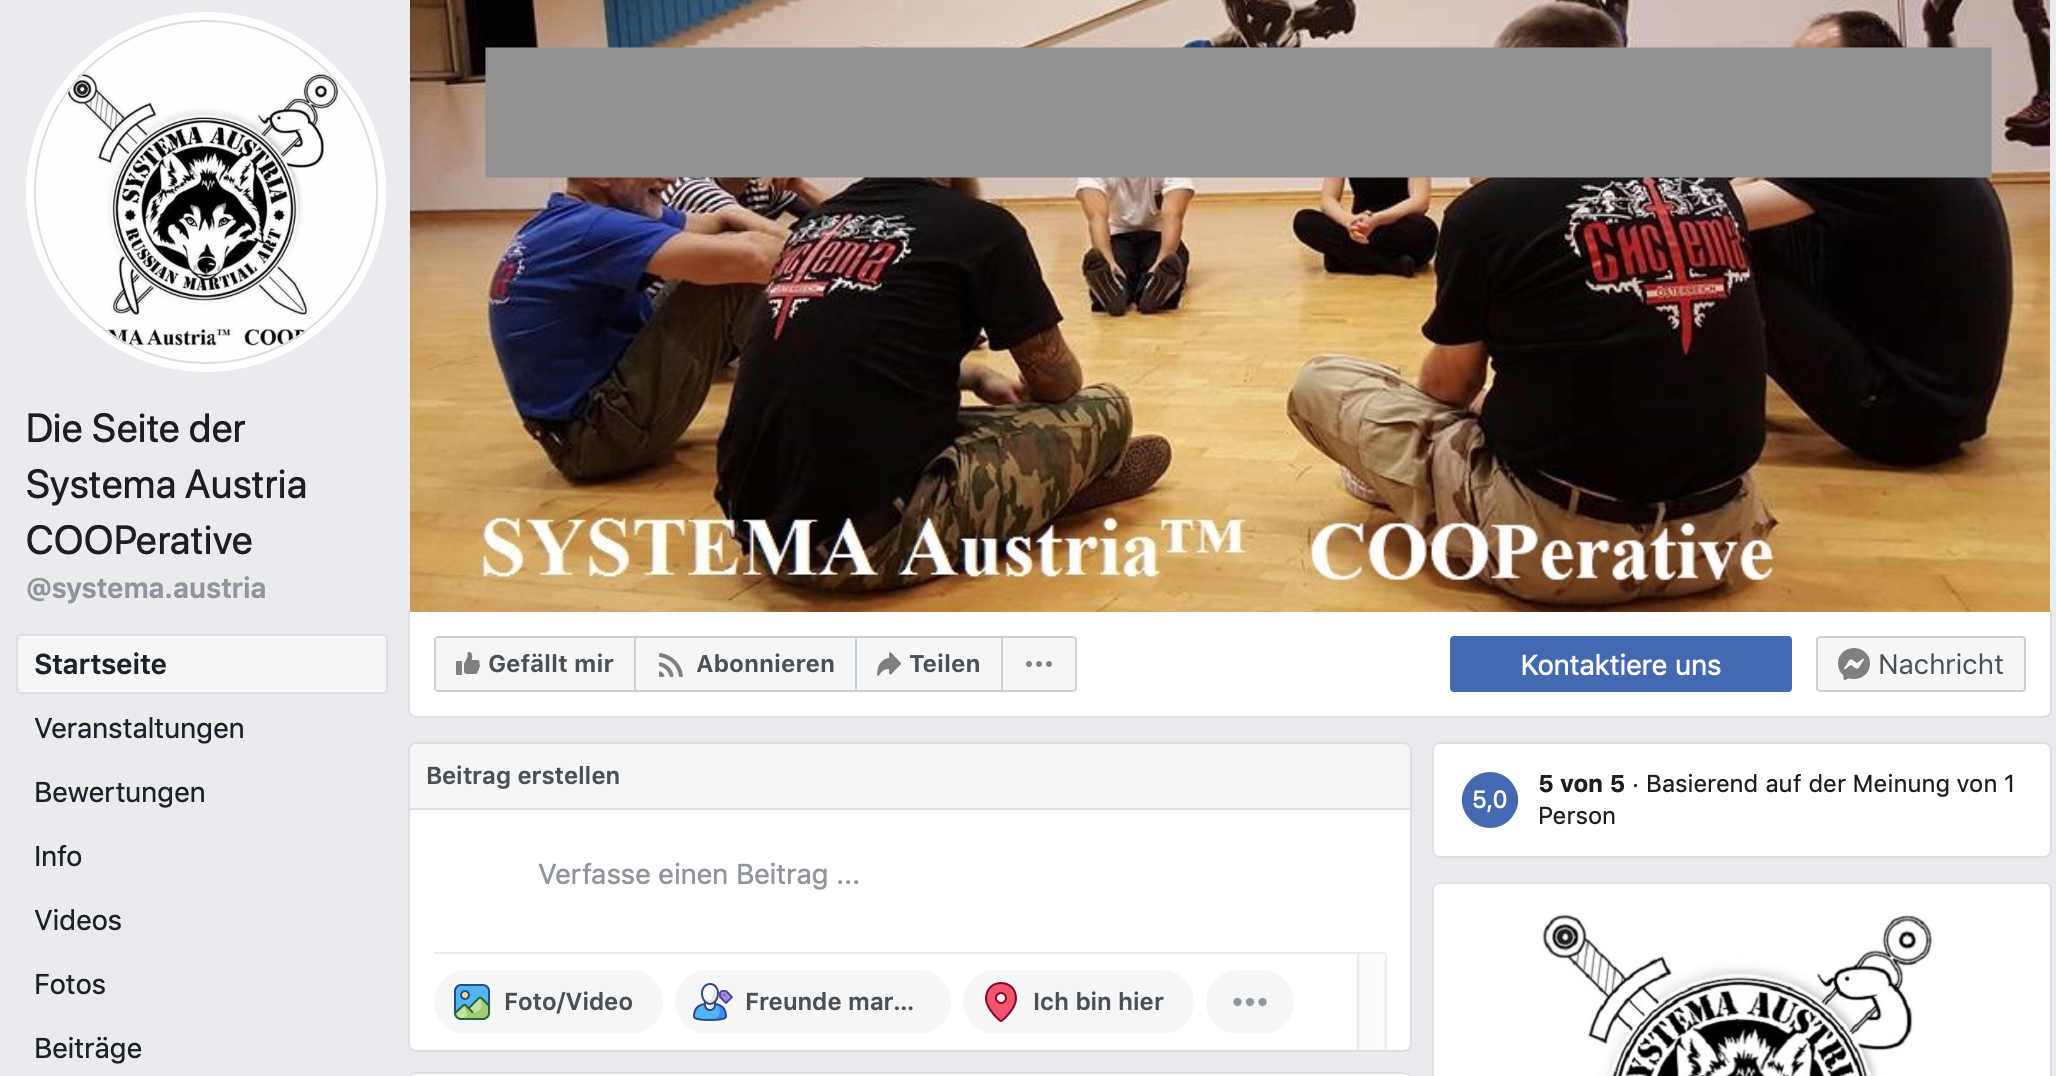 Facebookauftritt von "Systema Austria"